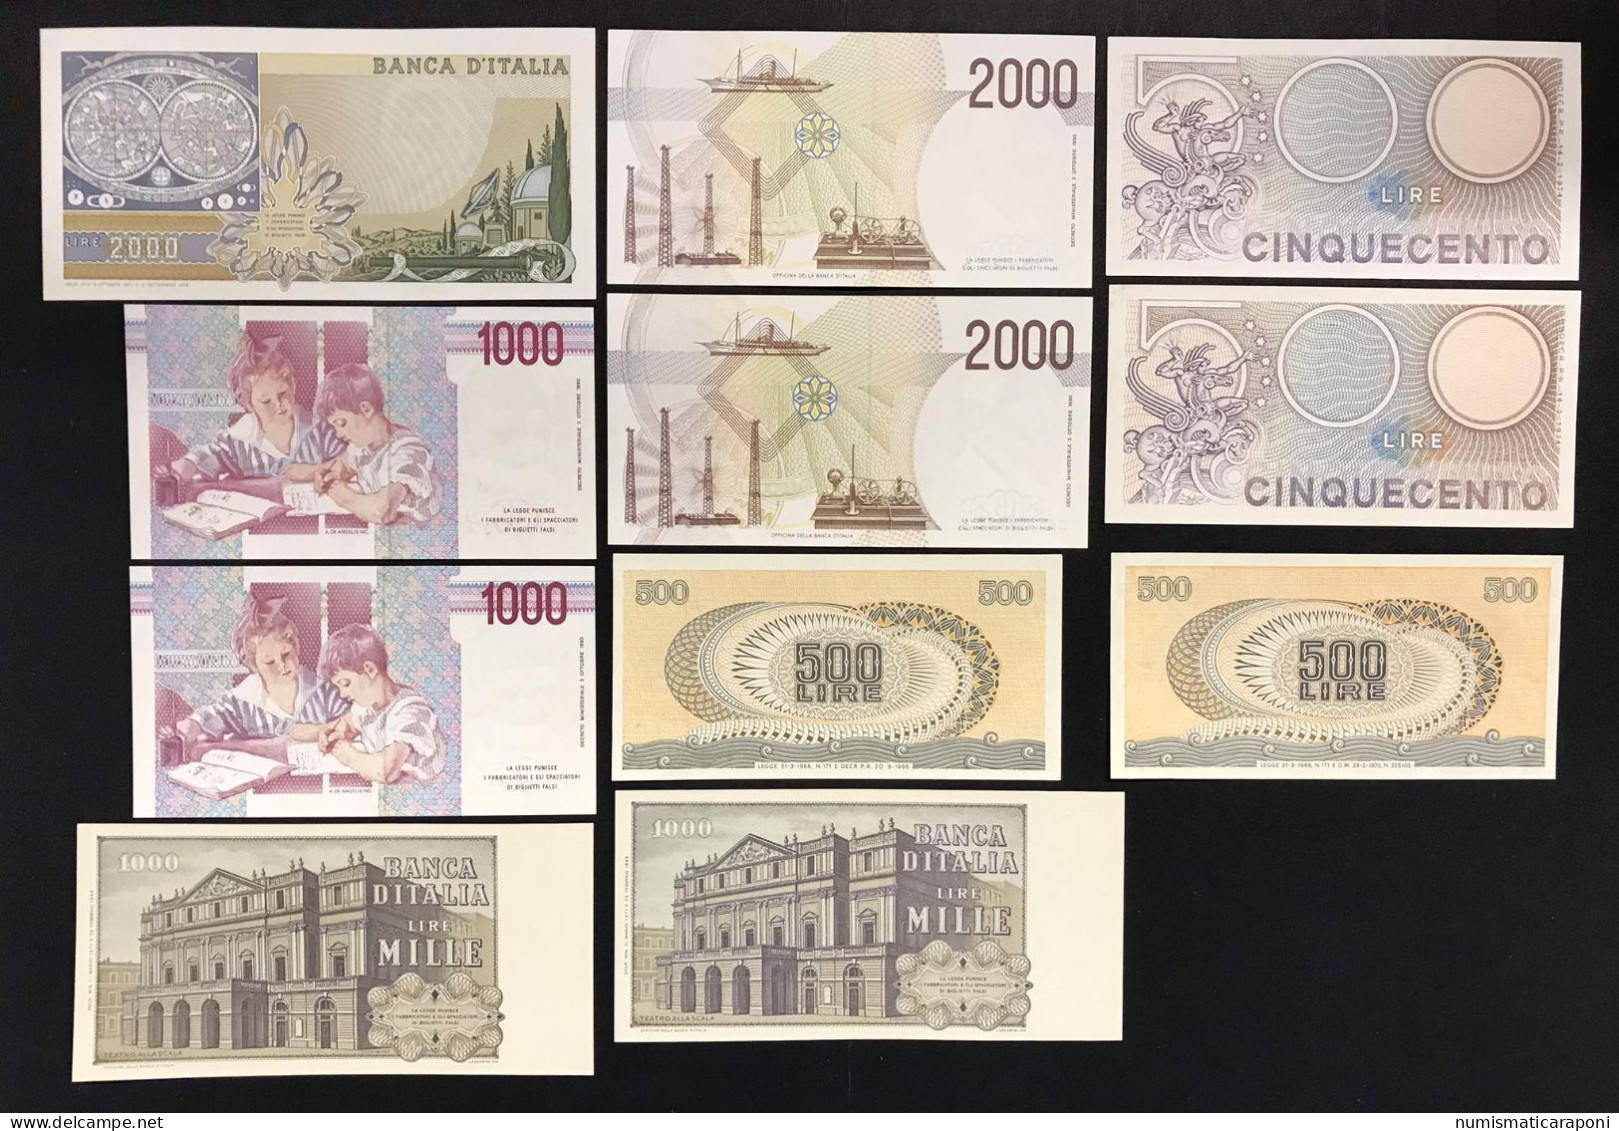 Italy Italia Regno/repubblica 19 Banconote 19 Notes Bb/q.fds Lotto.3423 - [ 9] Collezioni